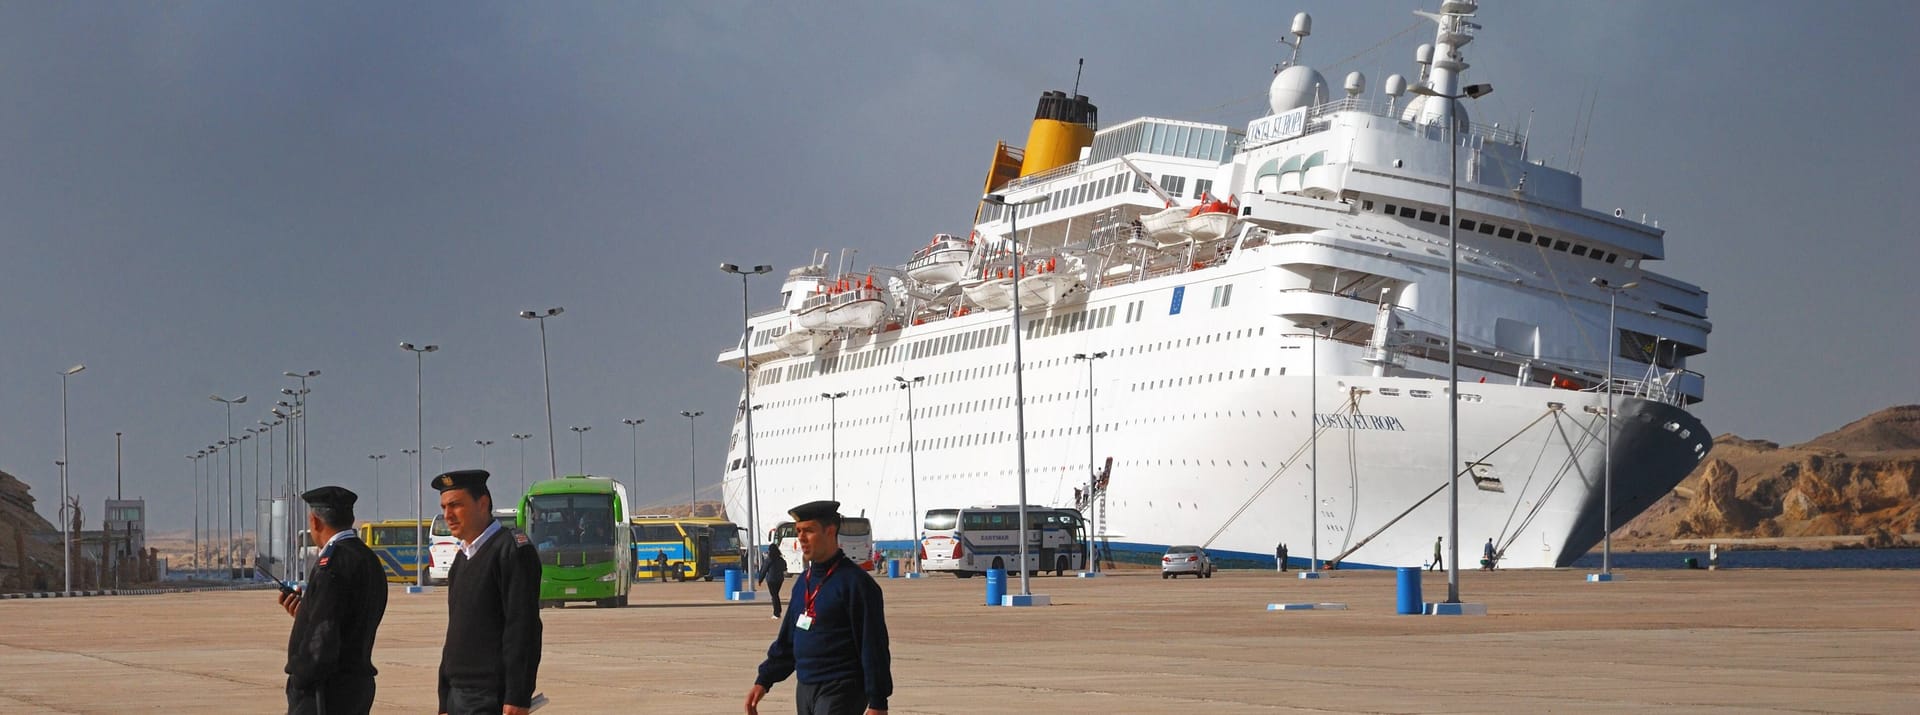 Die Costa Europa ist auf den Pier in Scharm el-Sheik aufgelaufen, dabei starben drei Menschen.